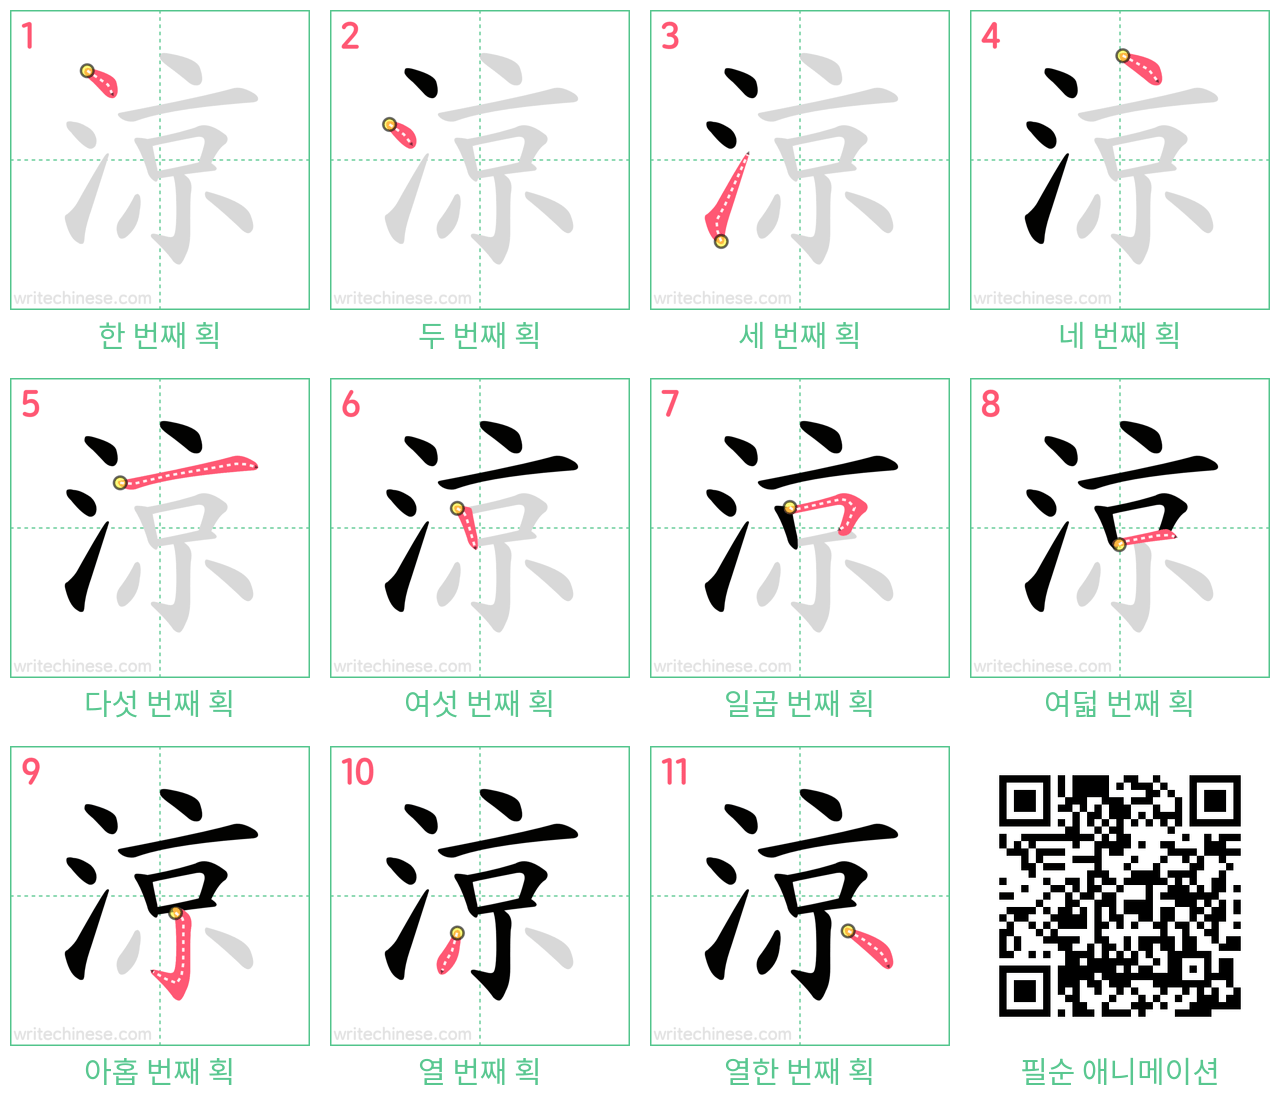 涼 step-by-step stroke order diagrams